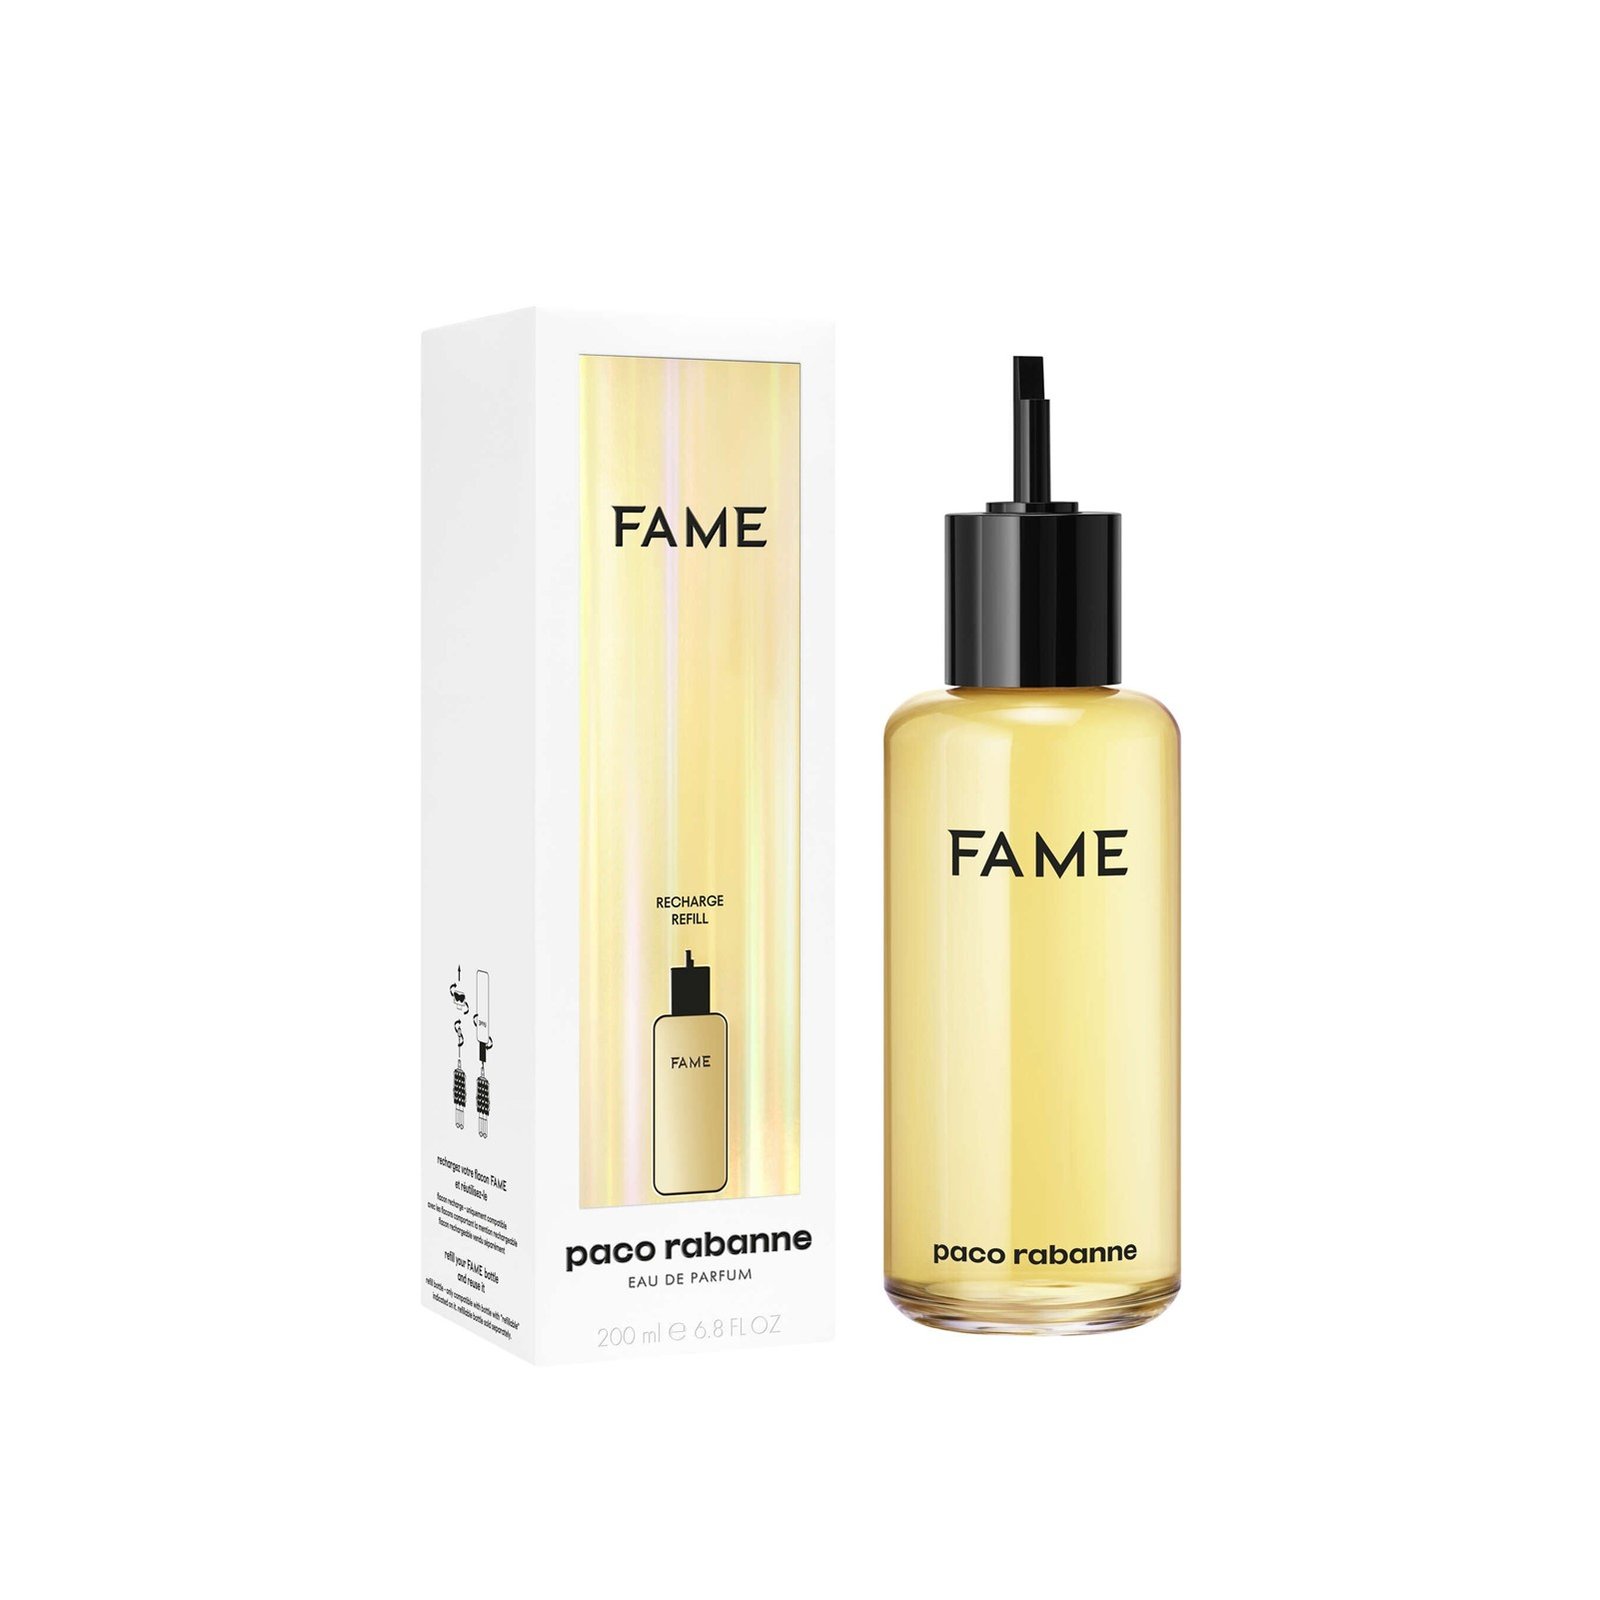 Paco Rabanne Fame Eau de Parfum Refill 200ml (6.8 fl oz)